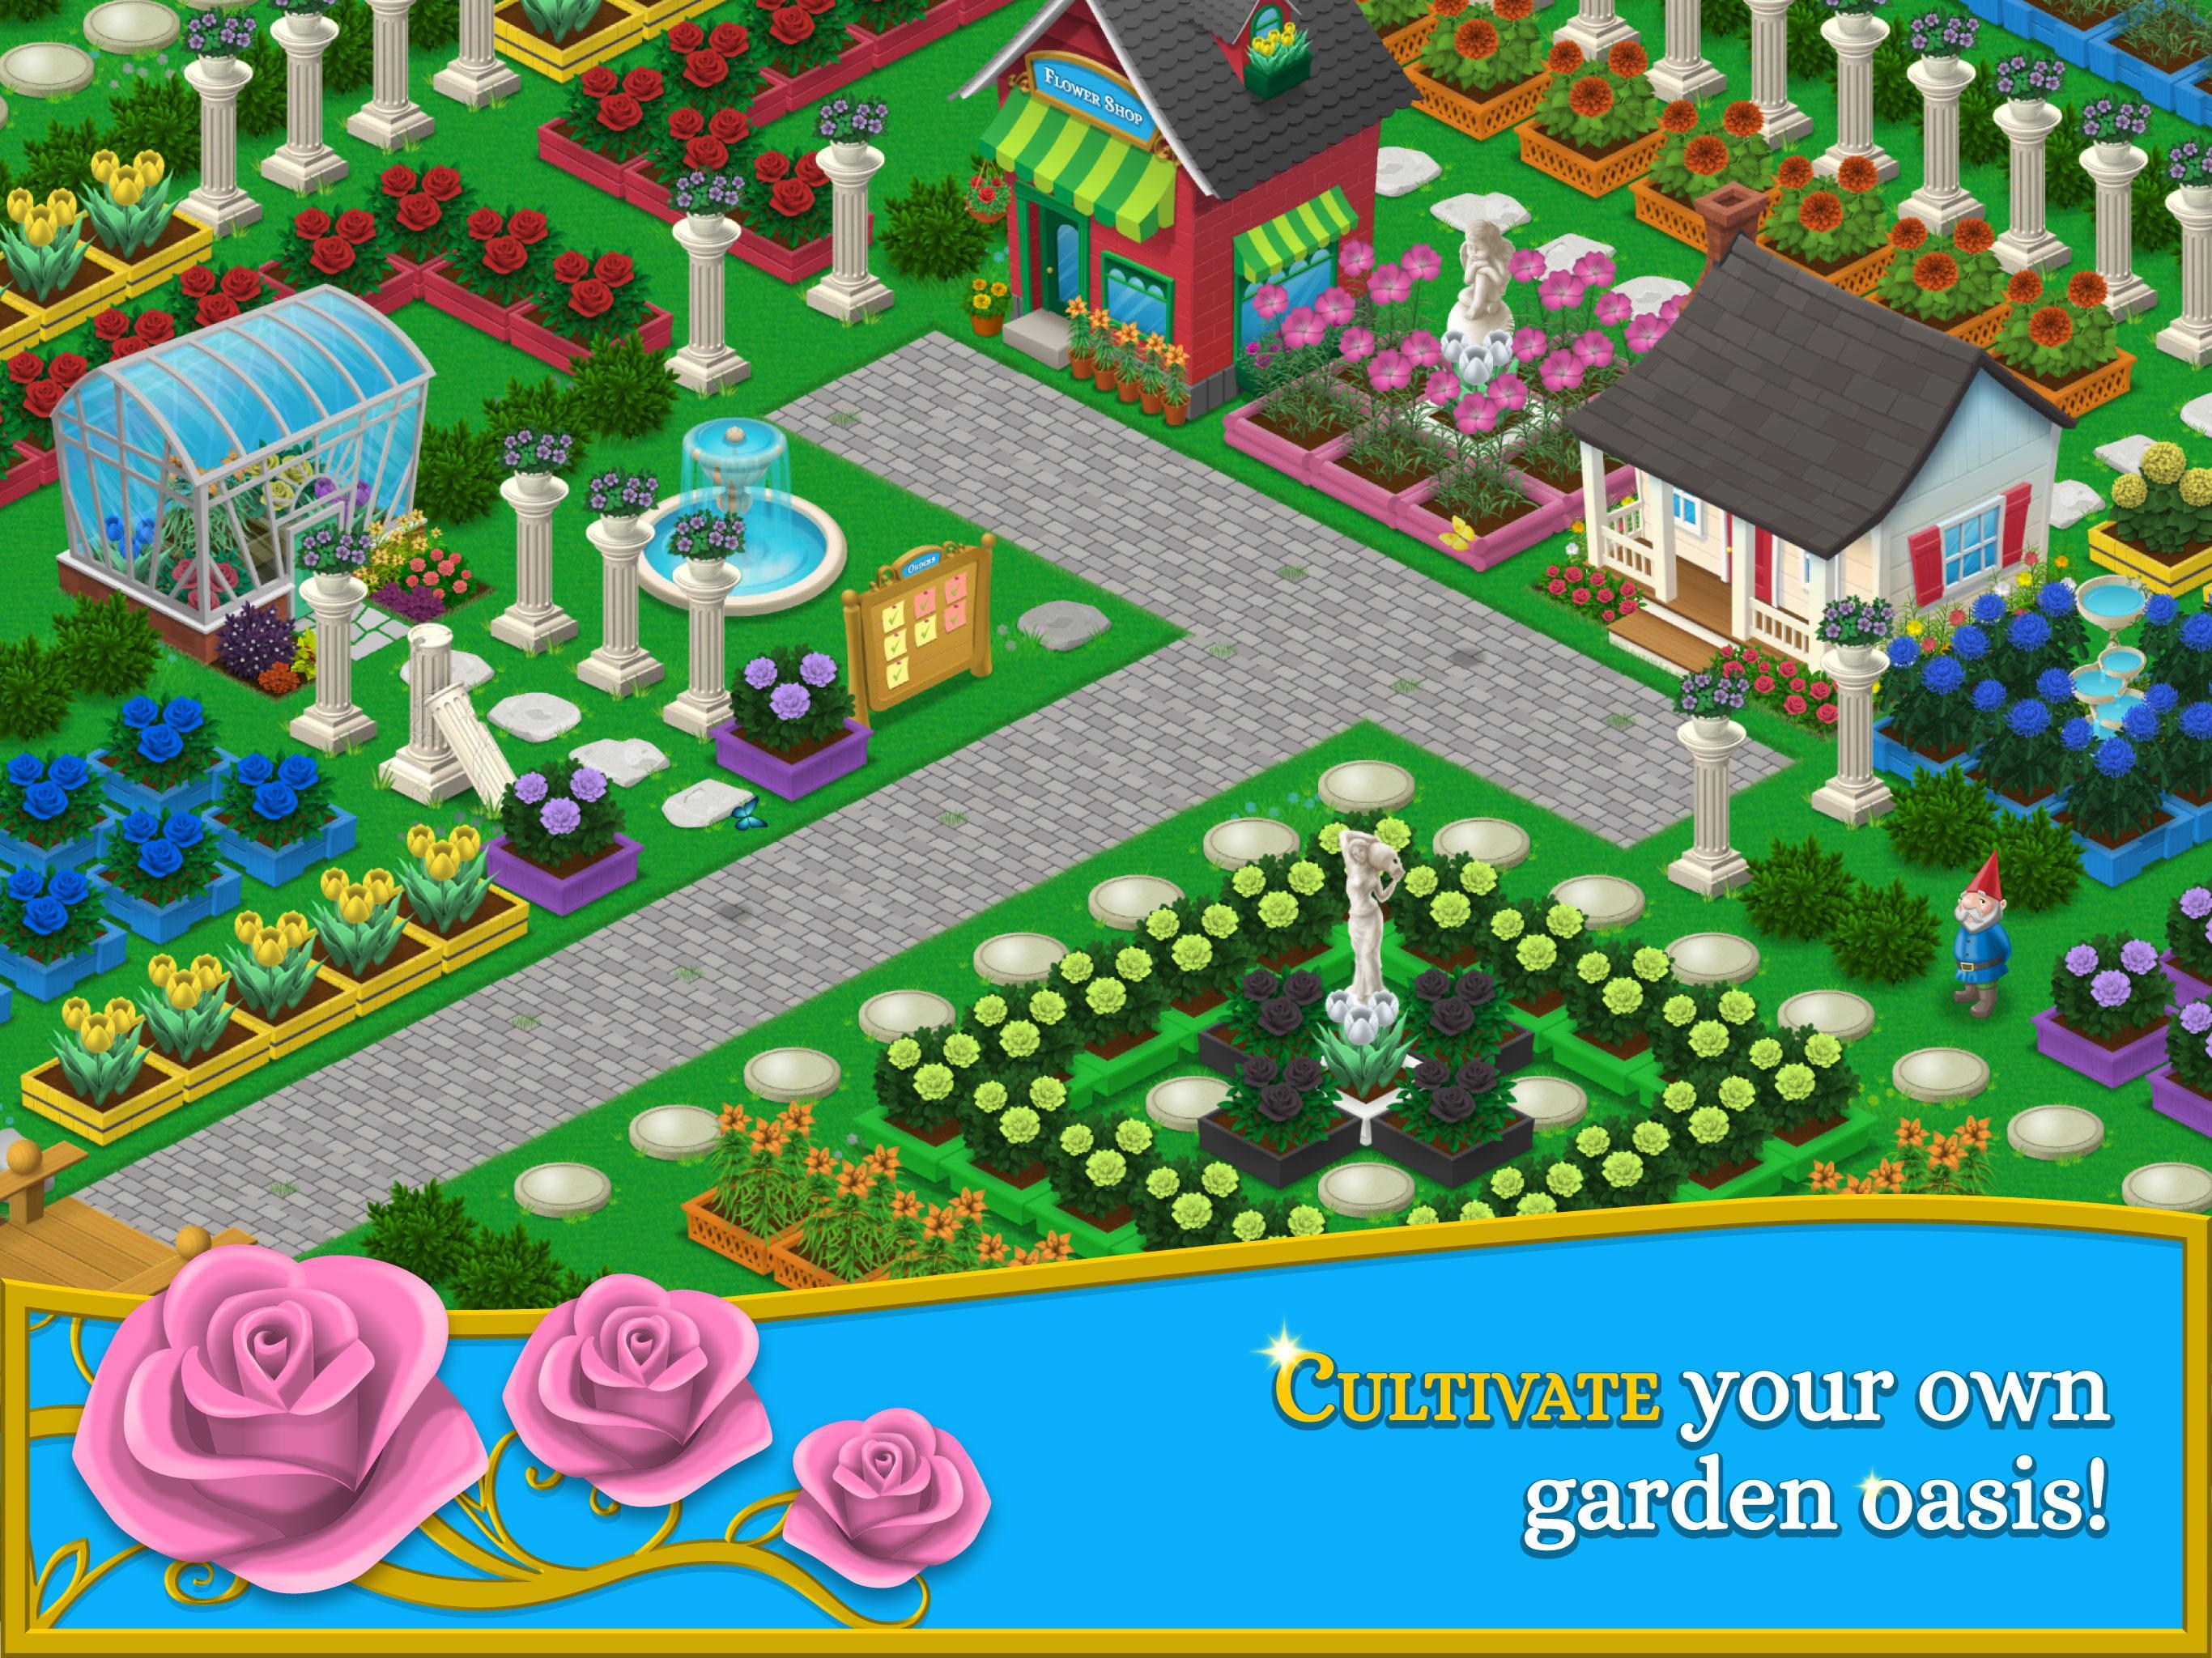 Screenshot 1 of Садовый гуру - Создайте свой сад 